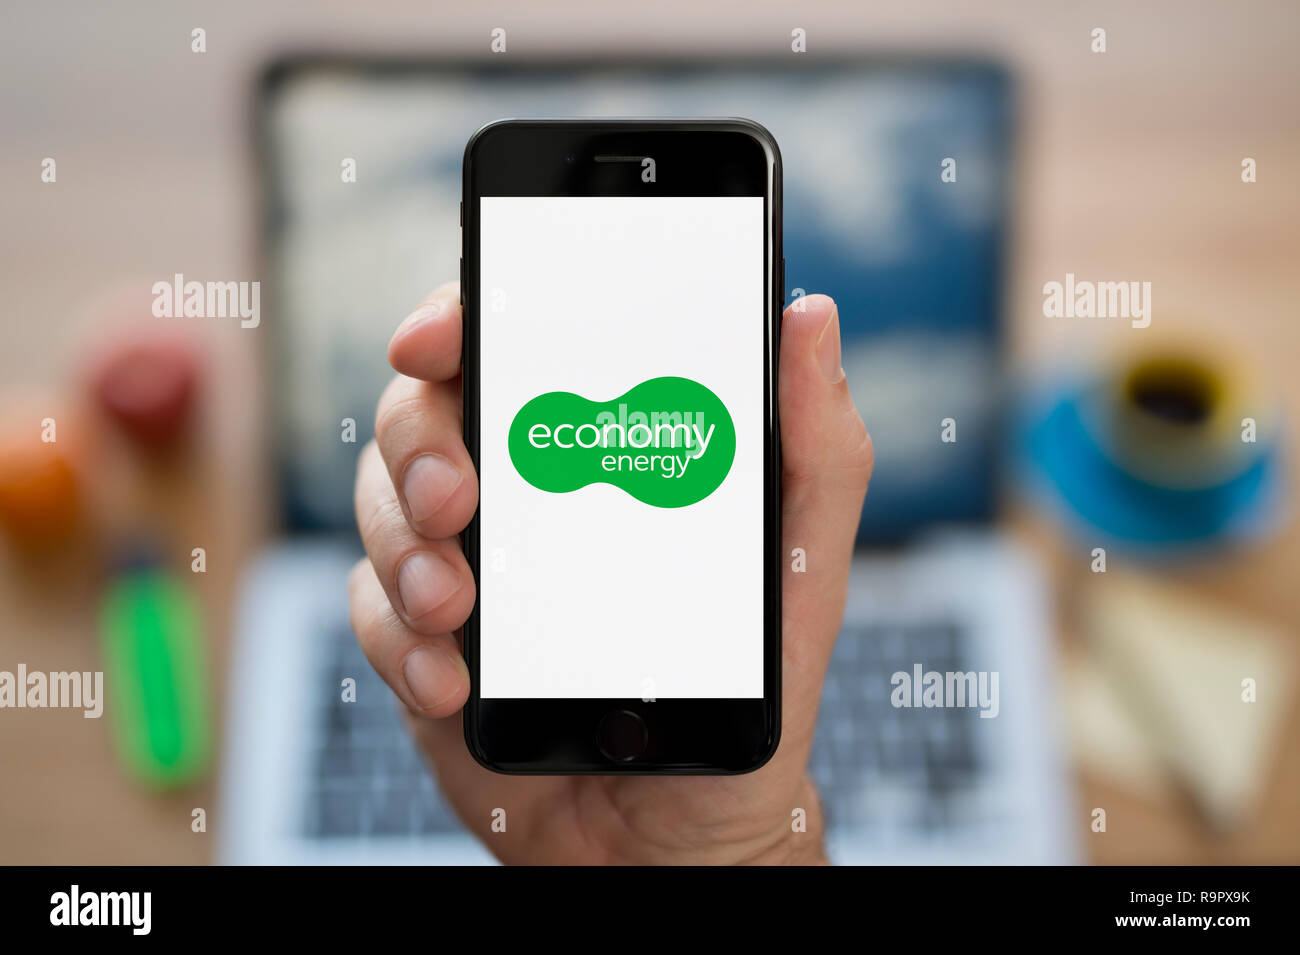 Ein Mann schaut auf seinem iPhone die zeigt die Wirtschaft Energie Logo (nur redaktionelle Nutzung). Stockfoto